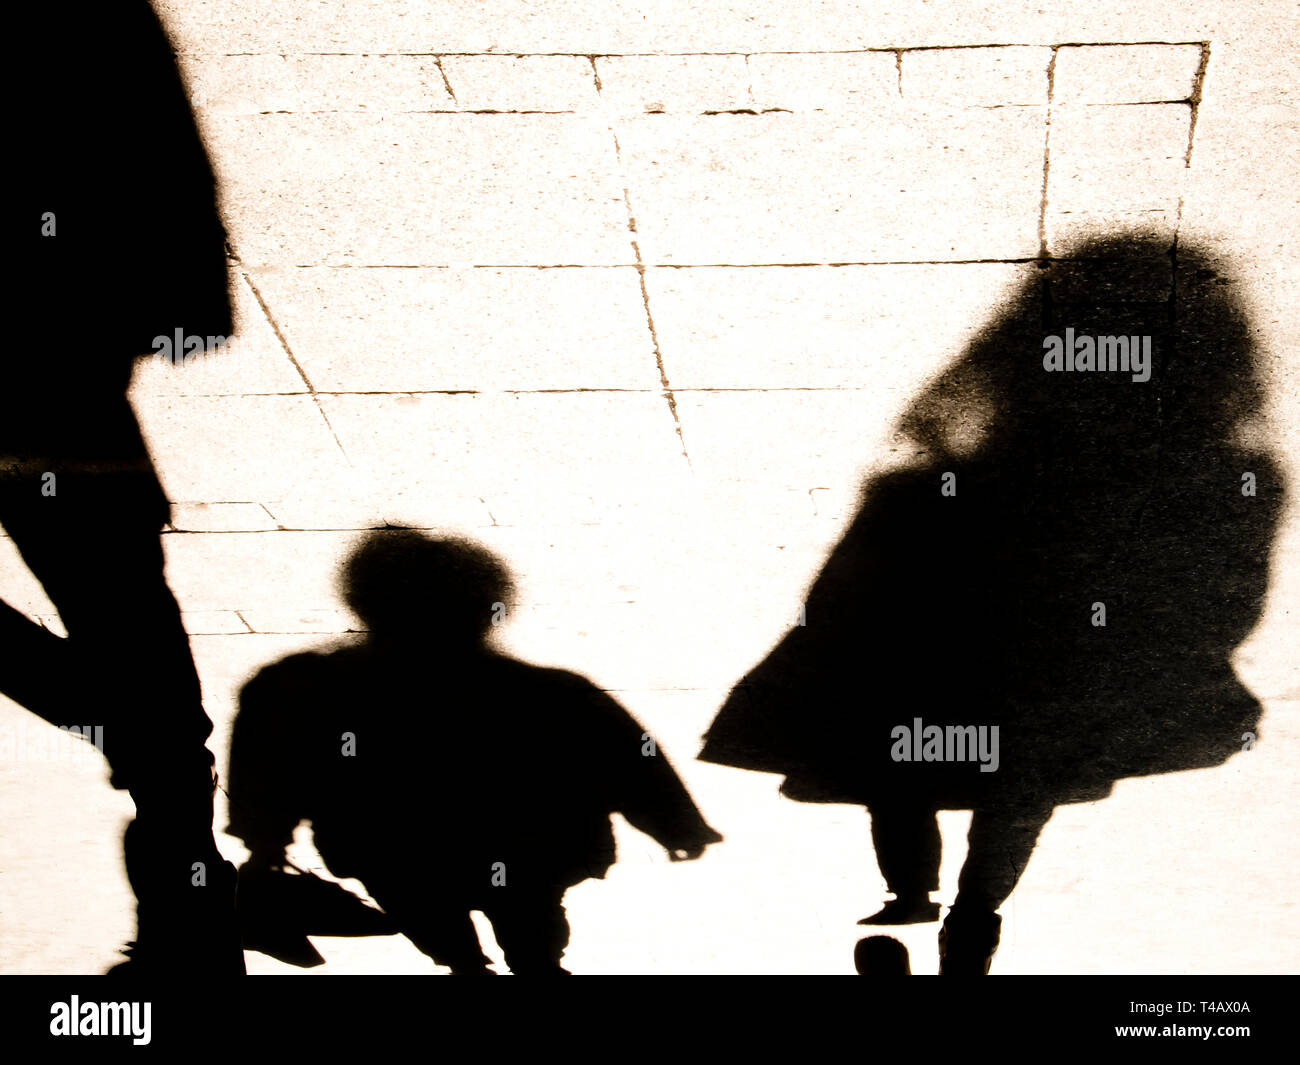 Blurrry silhouete ombra delle persone che camminano in alto contrasto seppia in bianco e nero Foto Stock